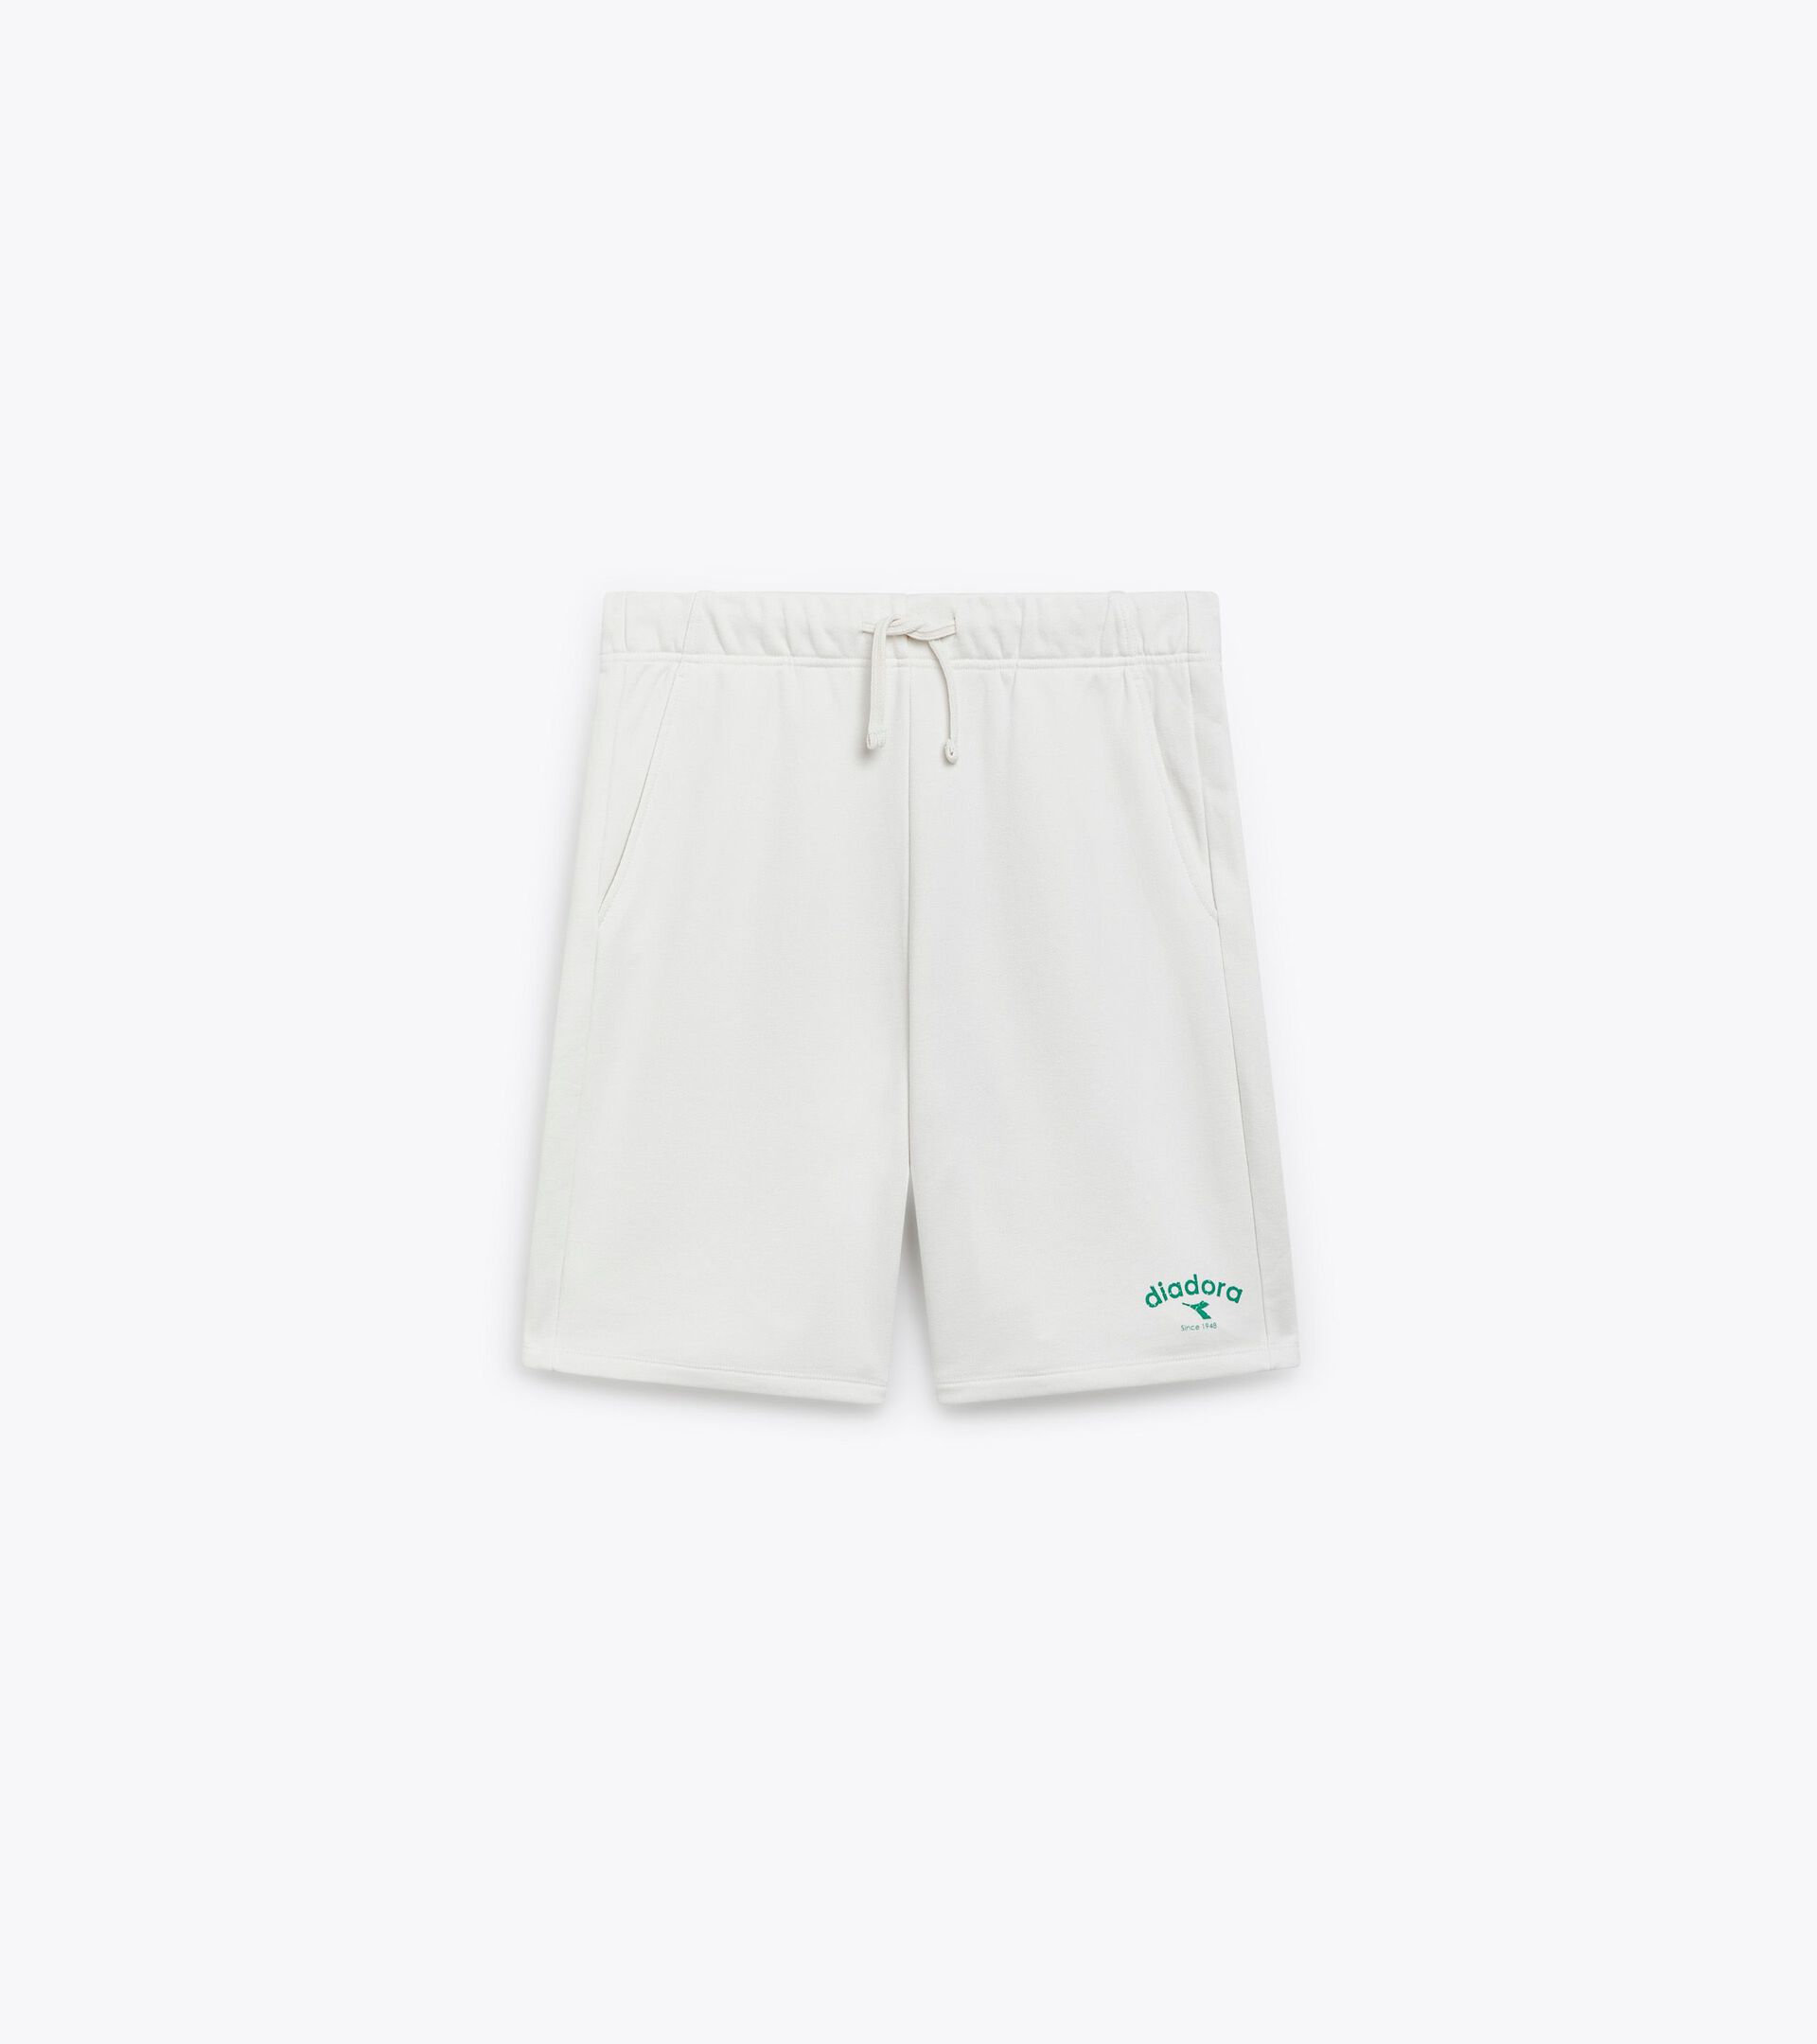 Pantalones cortos de algodón french terry - Gender neutral BERMUDA ATHL. LOGO BLANCA LECHE - Diadora